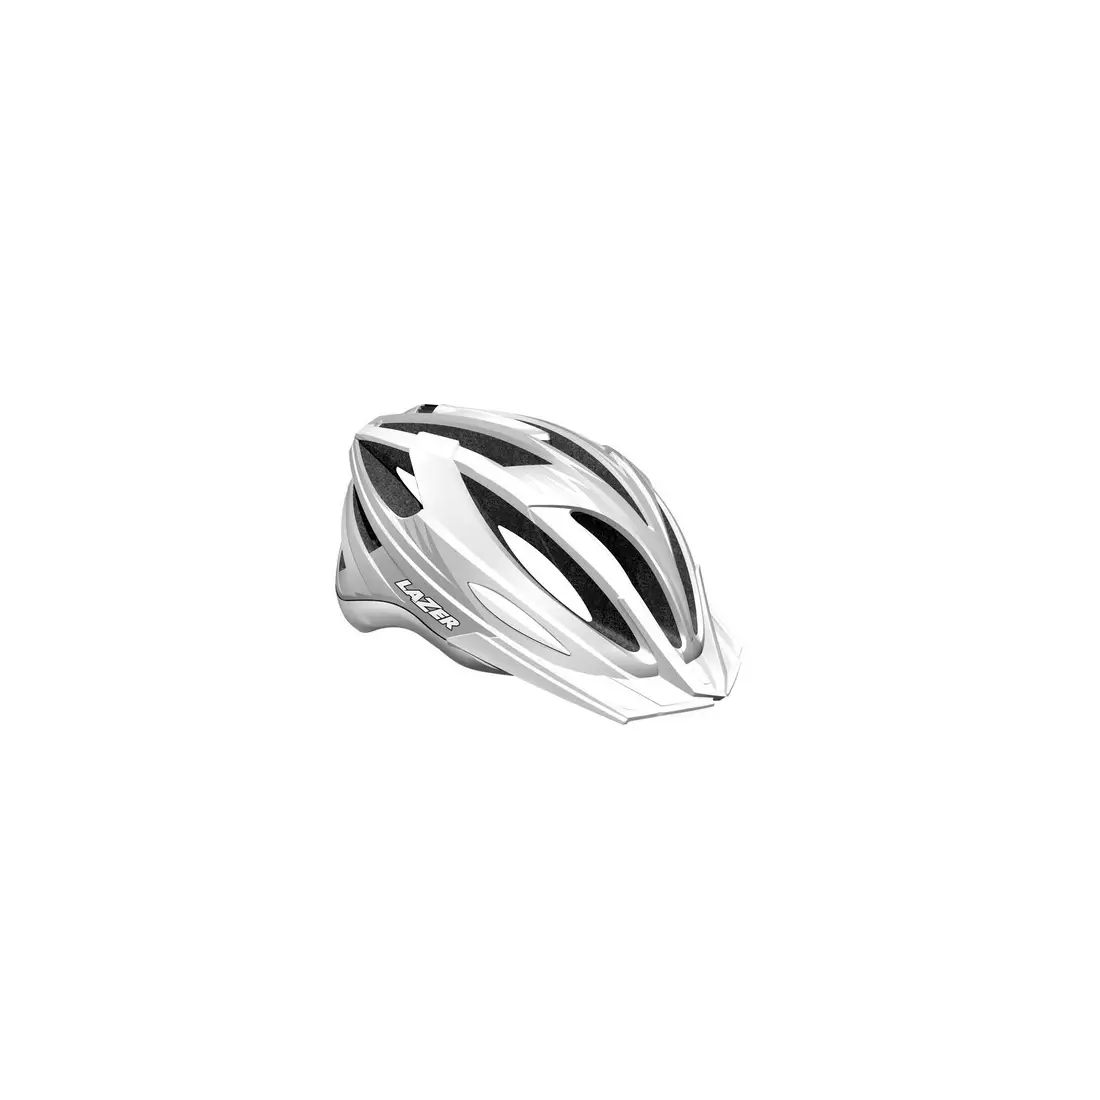 Casca de bicicleta LAZER - CLASH MTB, culoare: alb argintiu